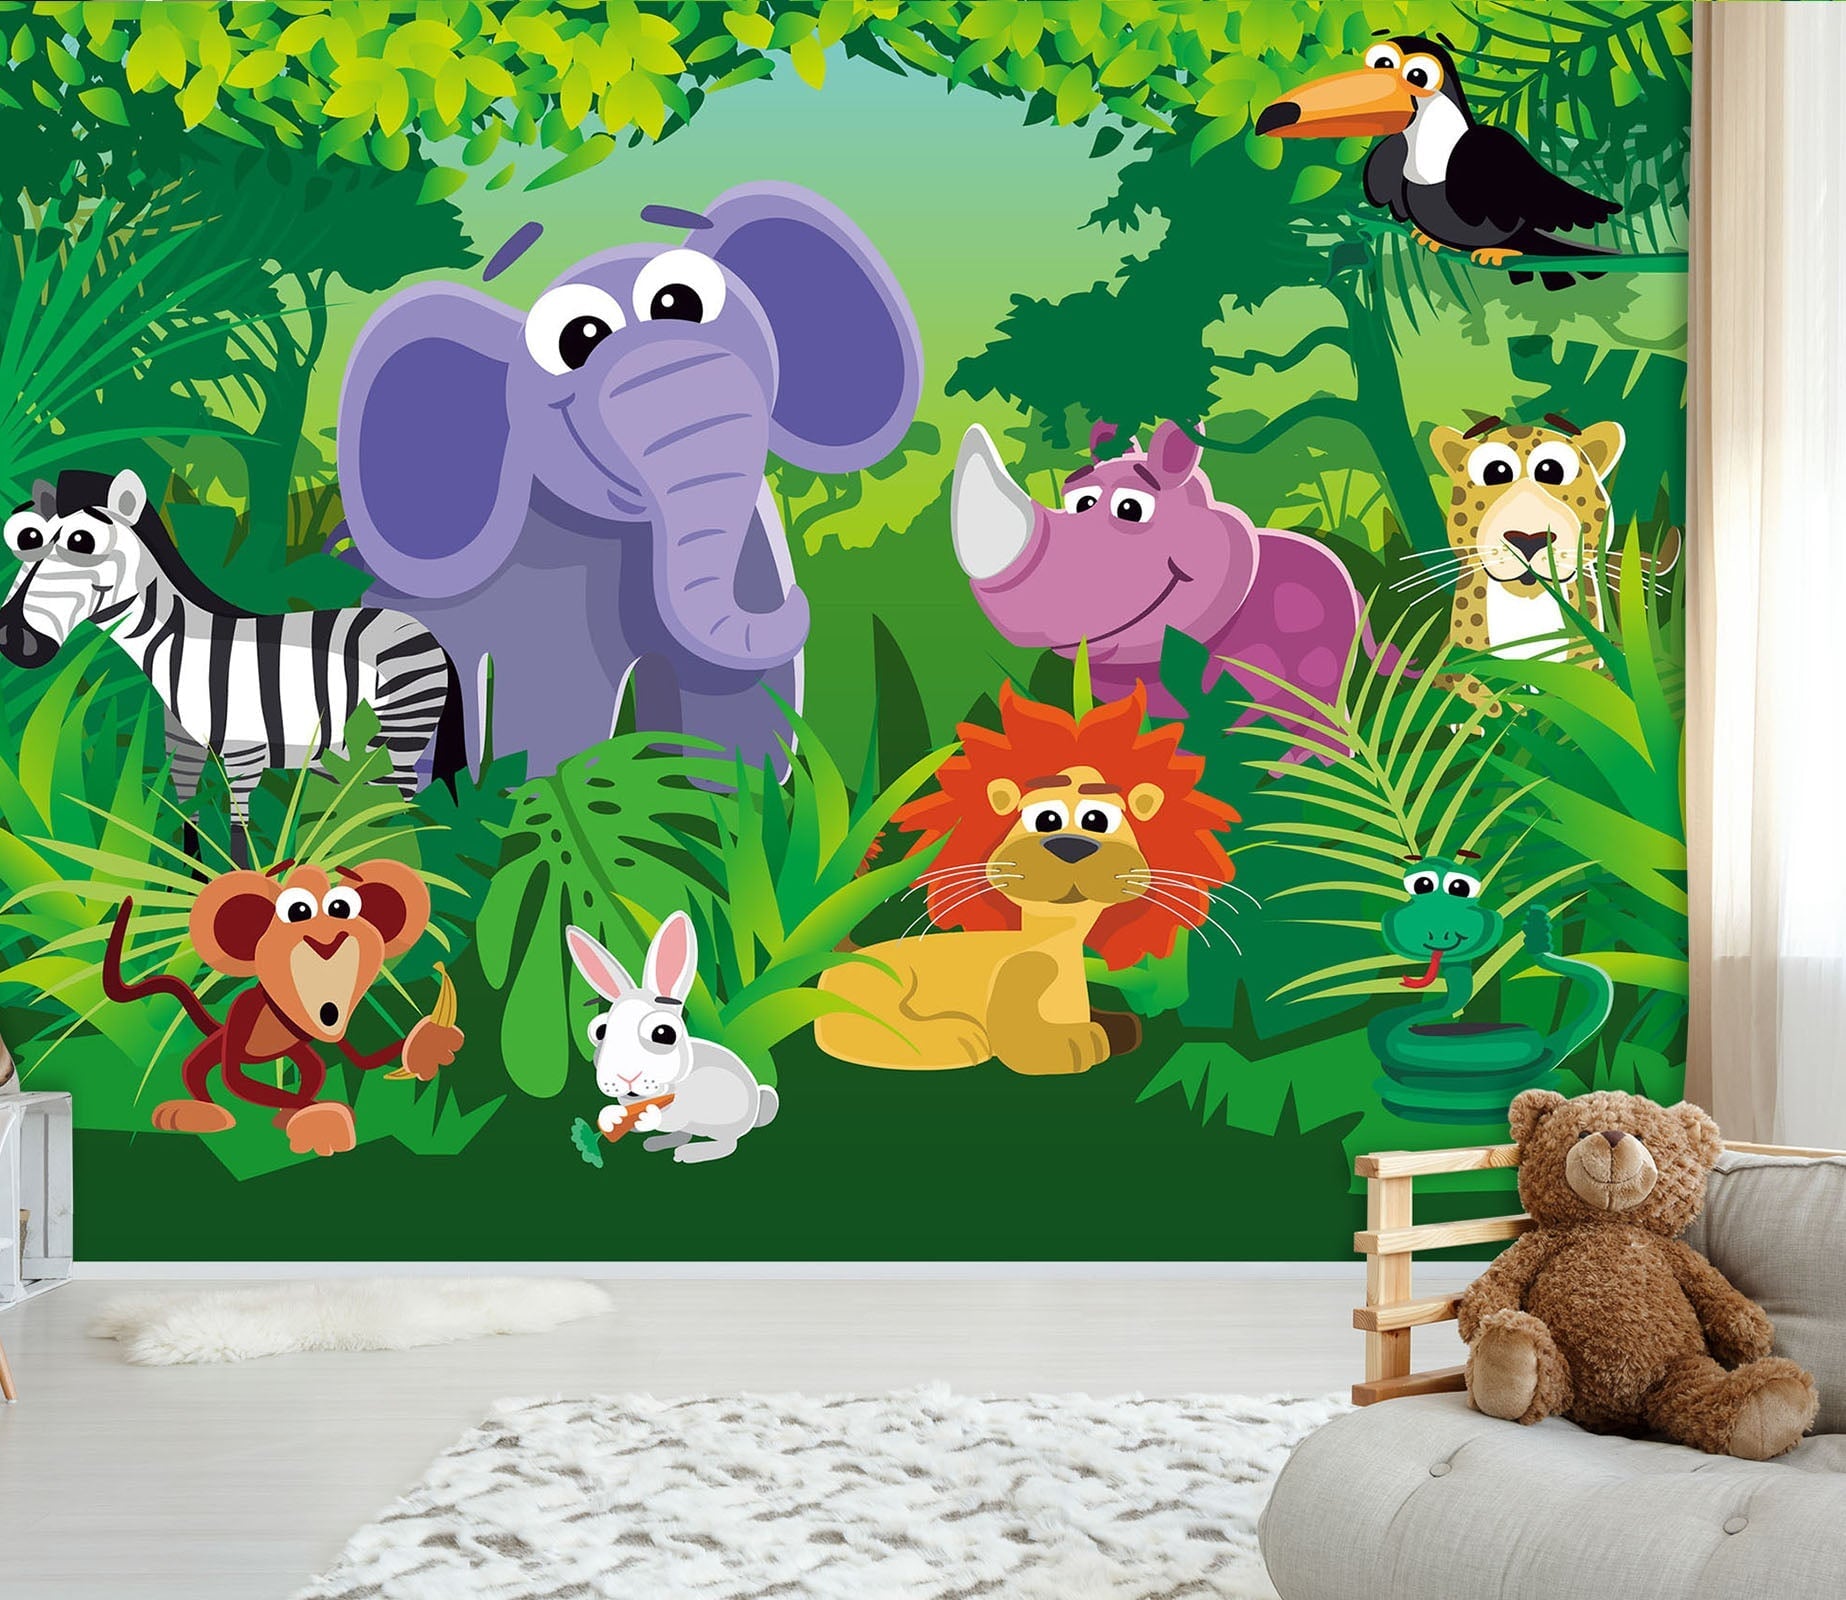 3D Cartoon Animal Forest 049 Wall Murals Wallpaper AJ Wallpaper 2 